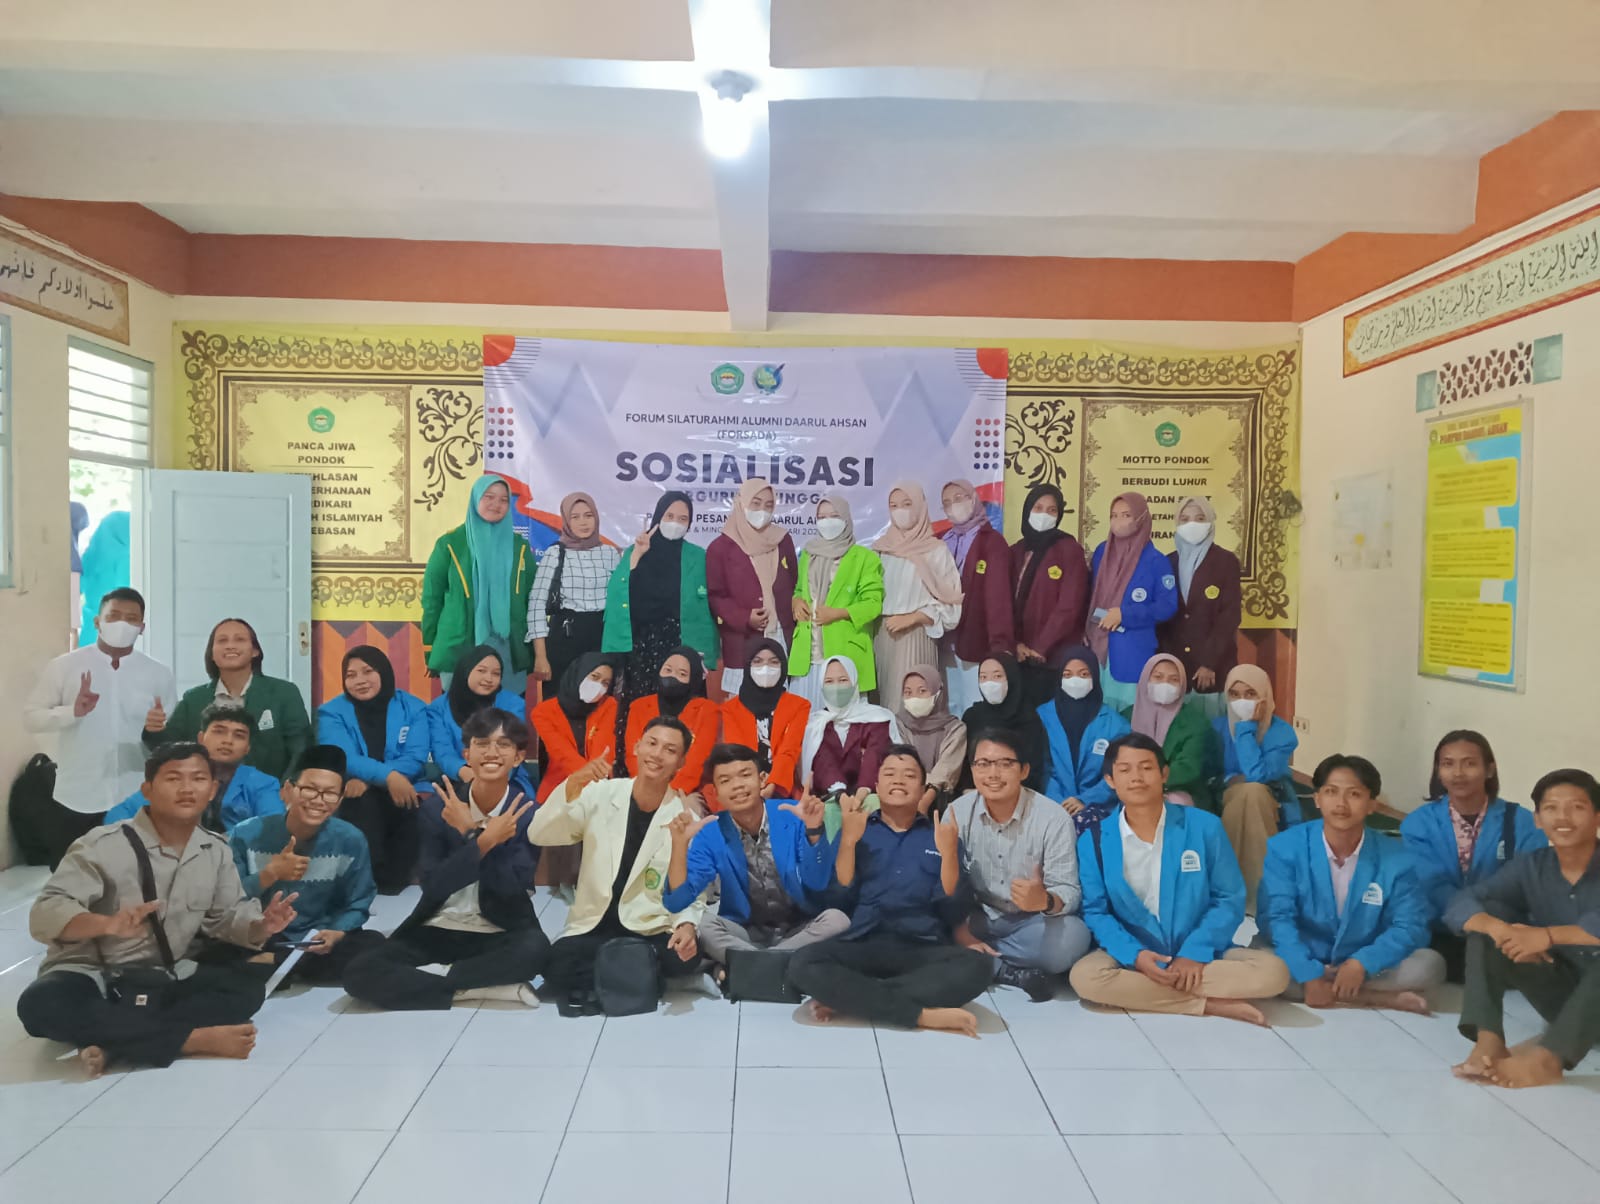 Forum Silaturahmi Alumni Daarul Ahsan (FORSADA) selenggarakan kegiatan Sosialisasi Perguruan Tinggi Minggu (29/1/2023). (Dok. Detik Indonesia)